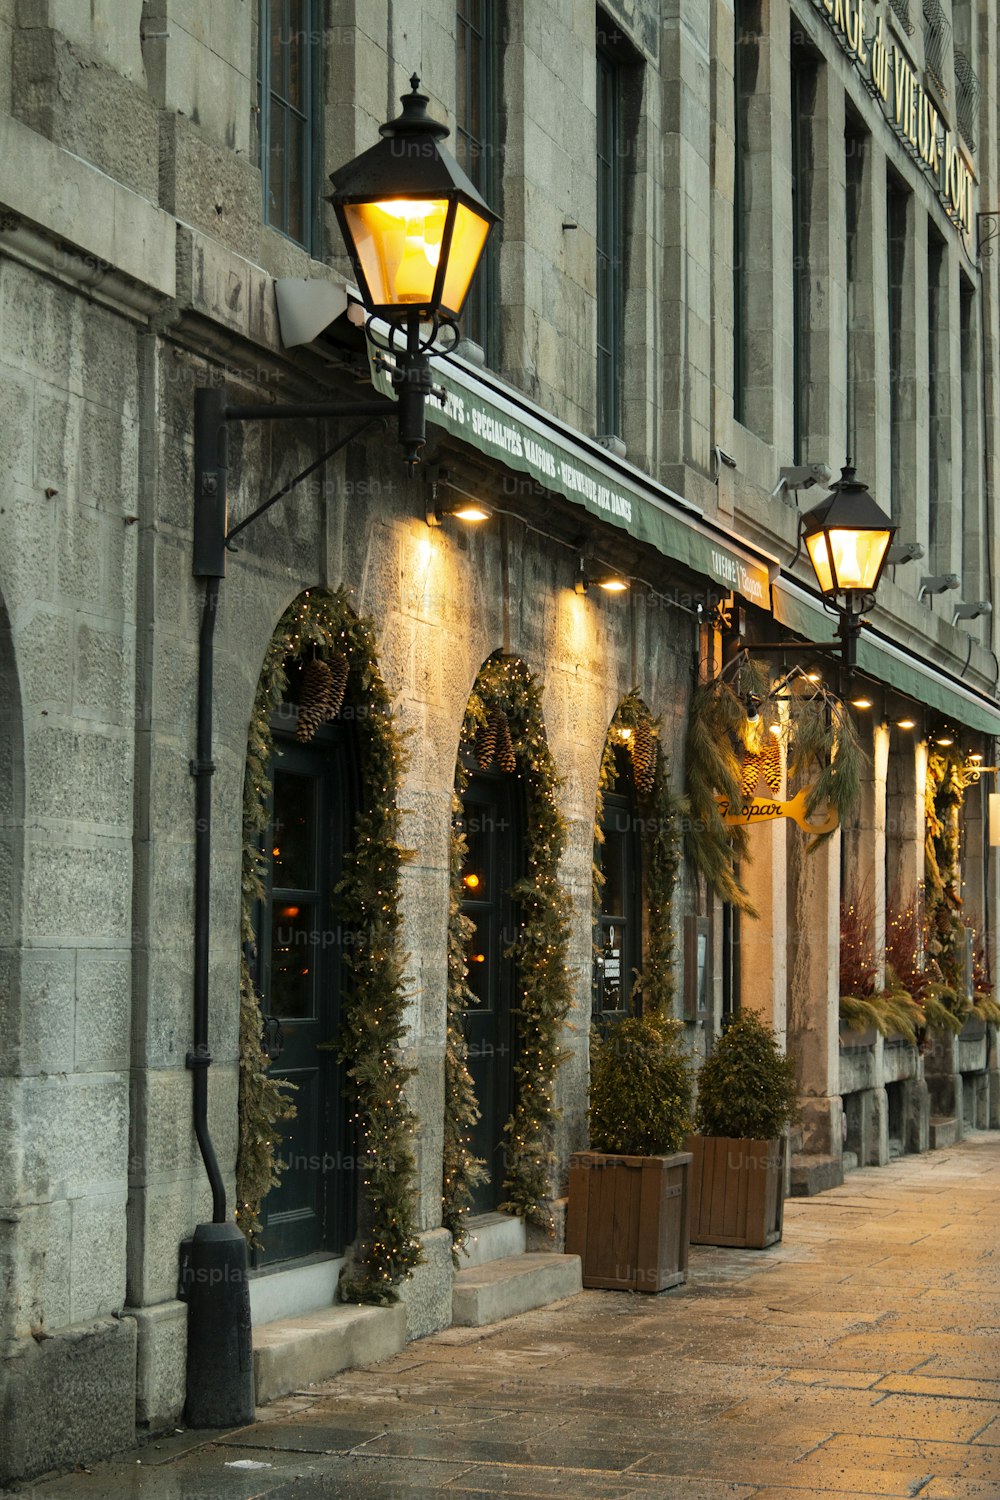 Street Scene con lámparas. Tomas al aire libre de Montreal en invierno.